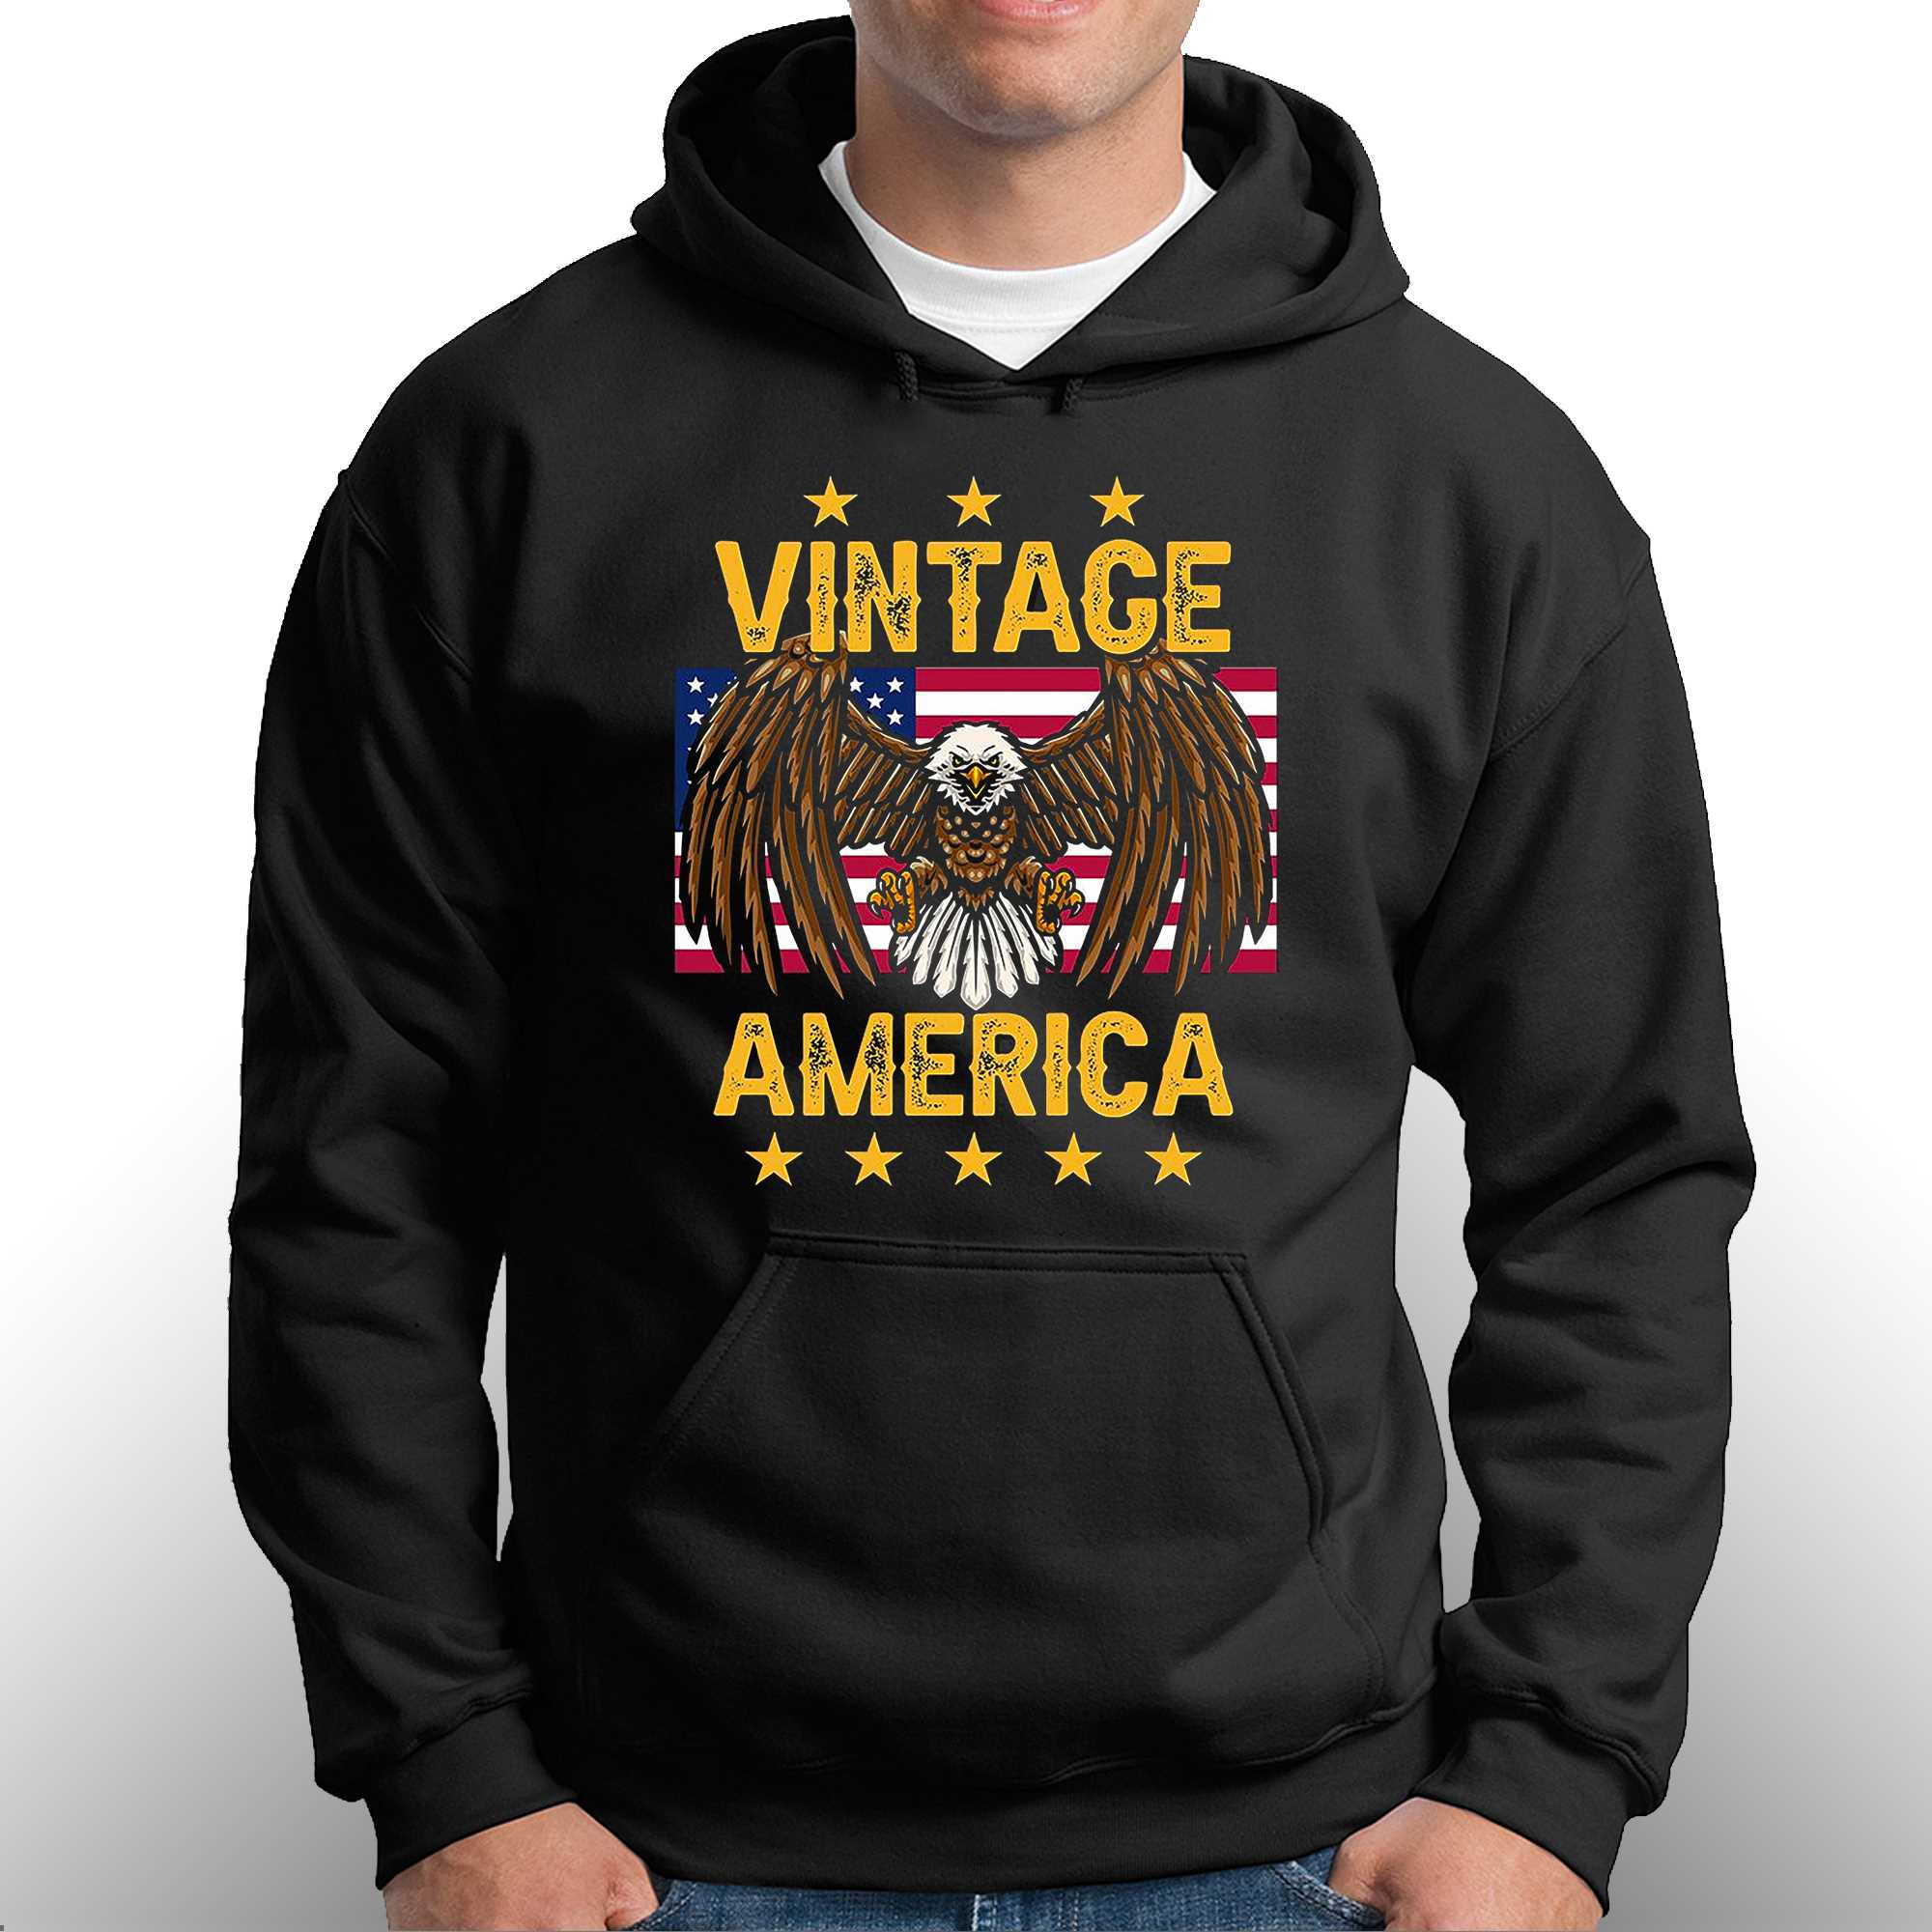 vintage american eagle clothes